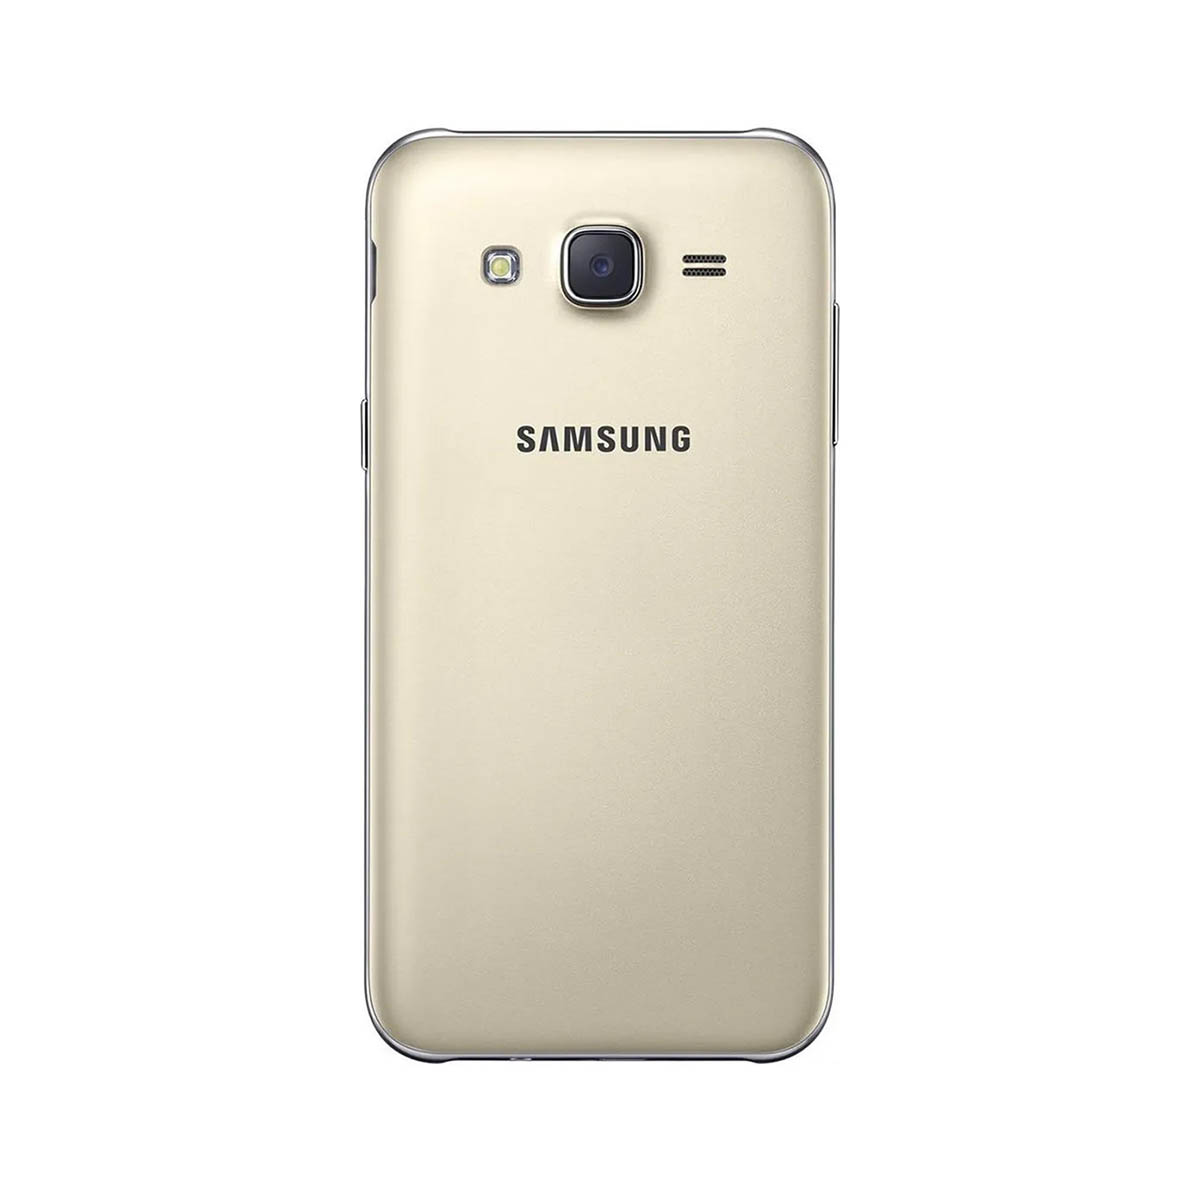 Samsung Galaxy J5 Duos J500 16gb Tela 5' Wifi - Seminovo